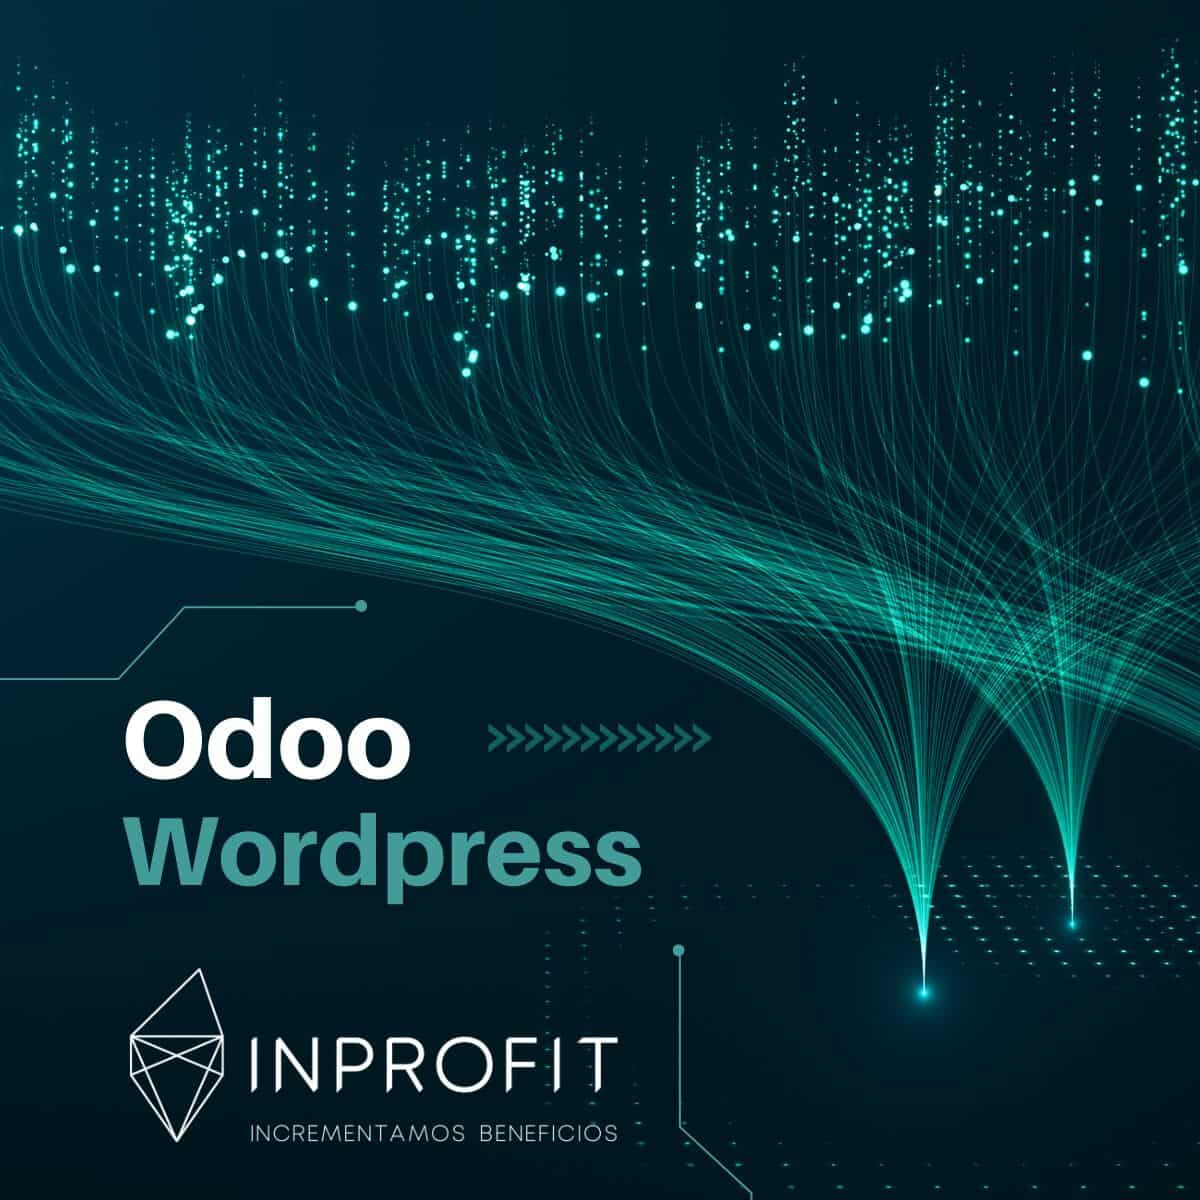 Wordpress y odoo: integración para una estrategia de marketing 360